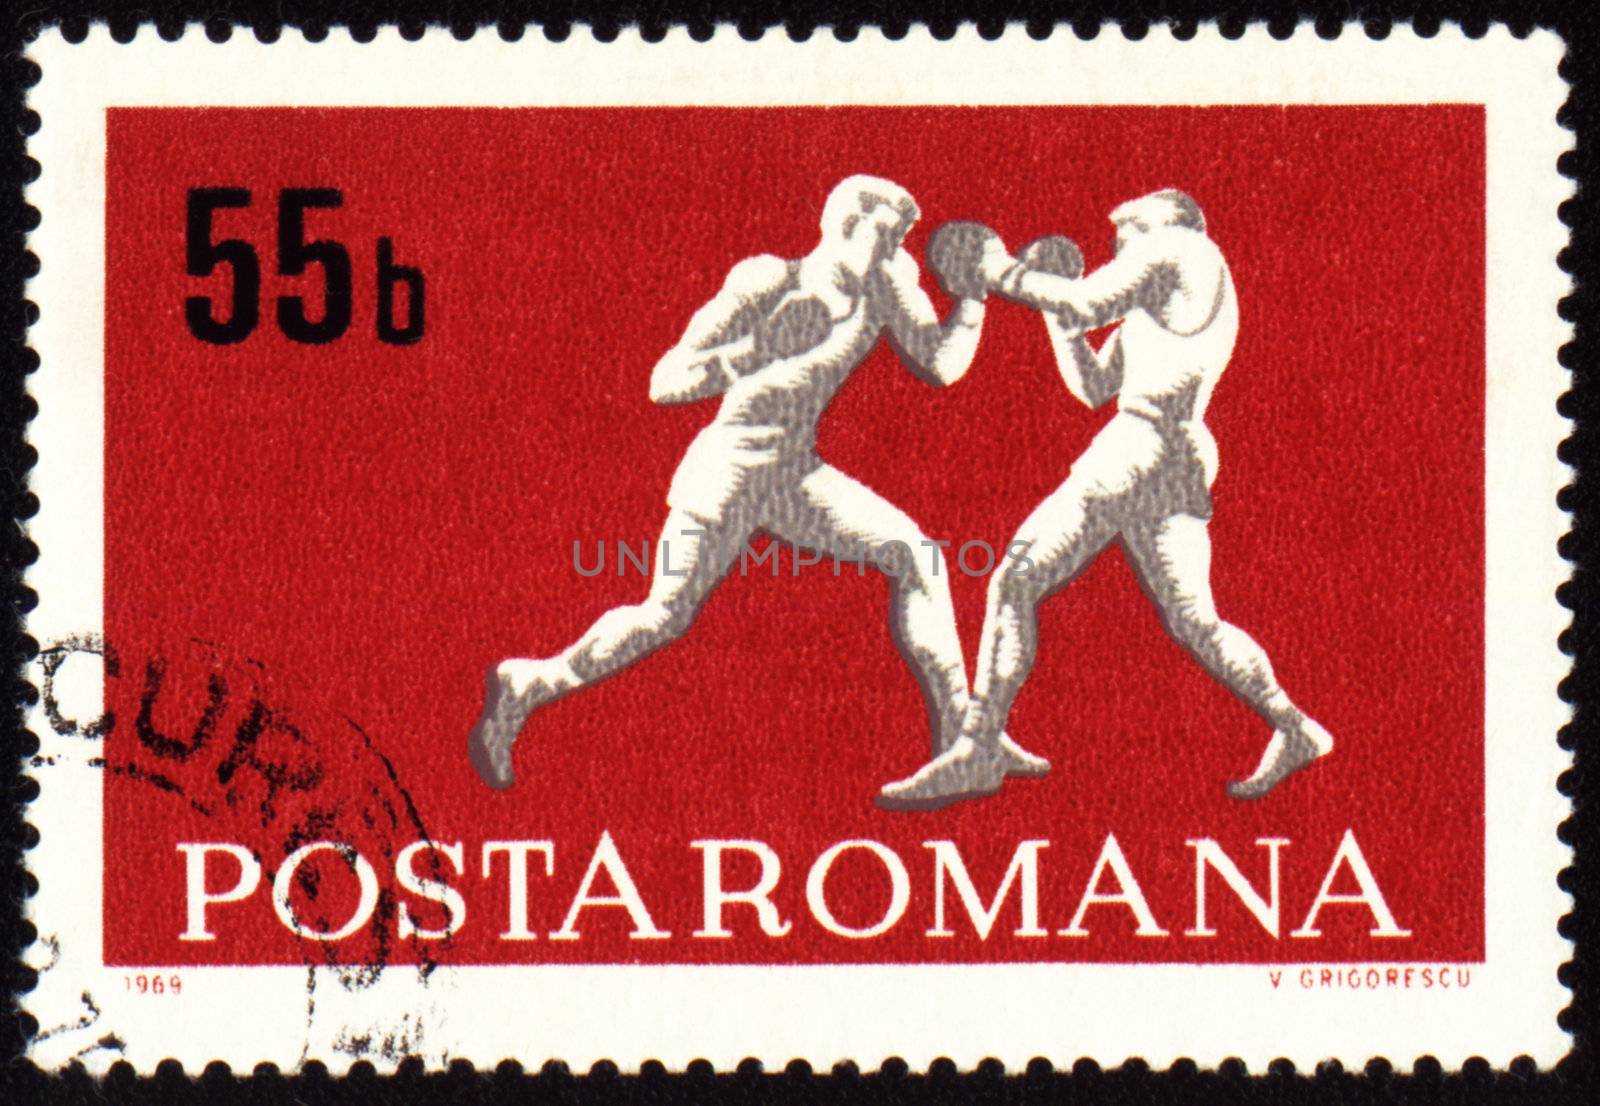 ROMANIA - CIRCA 1969: A post stamp printed in Romania shows boxing, series, circa 1969